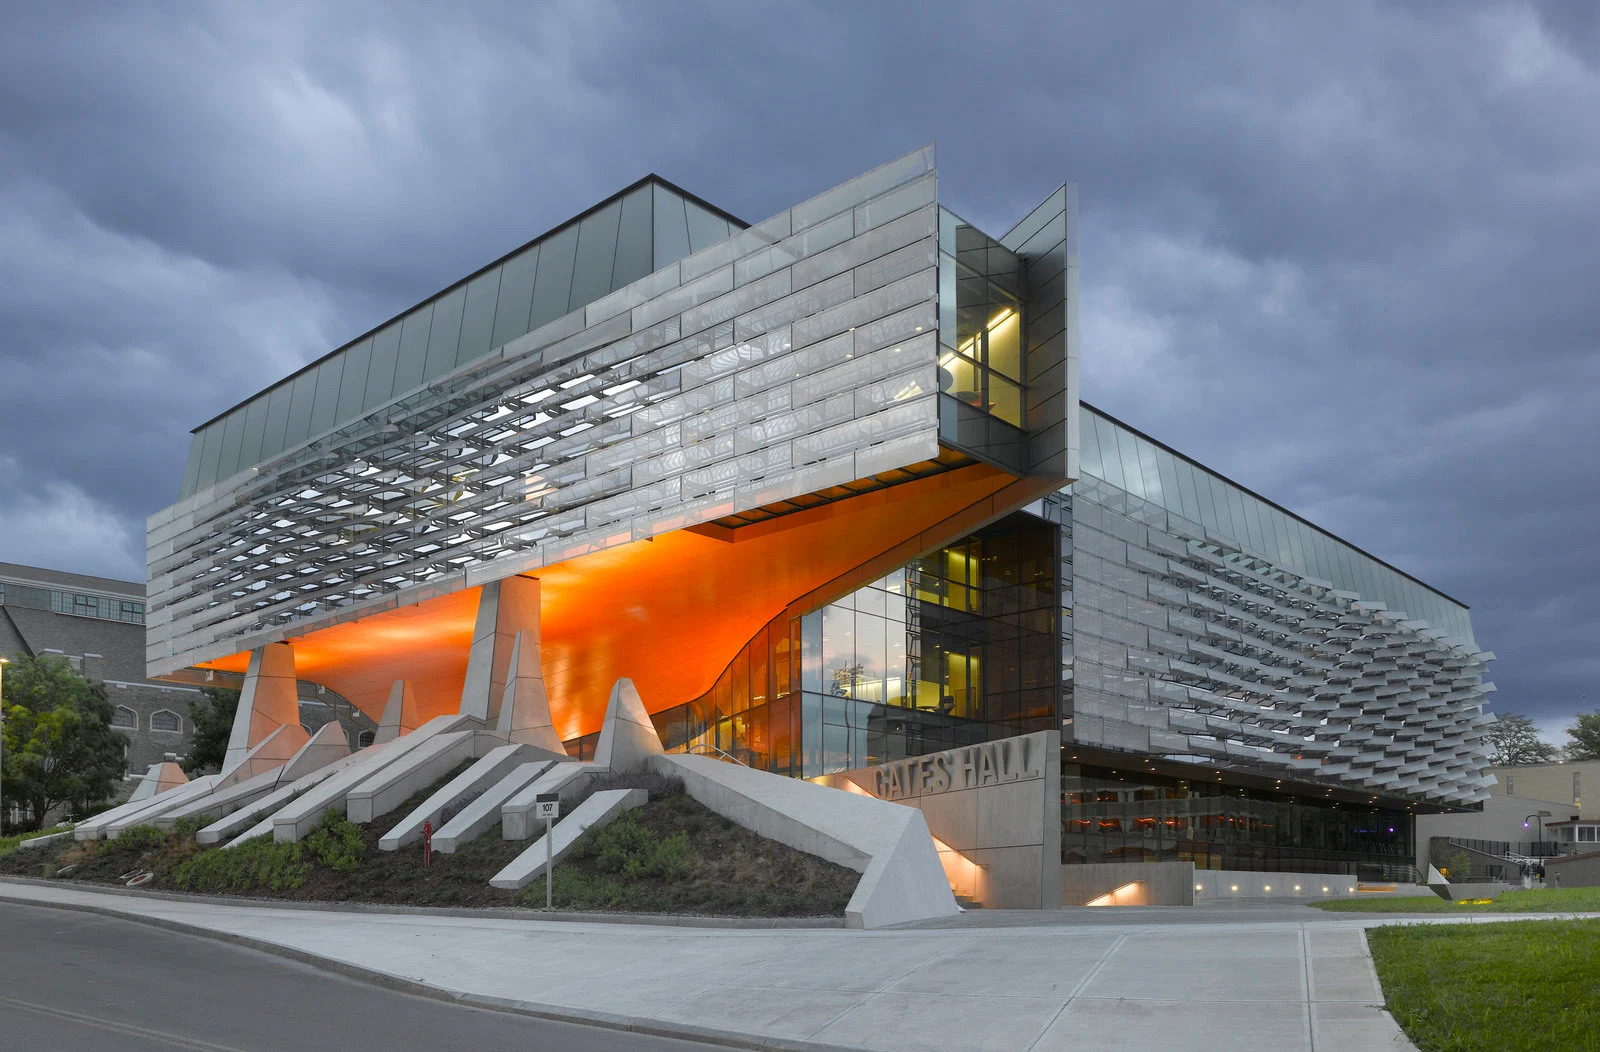 4.	Bill & Melinda Gates Hall de l'Université Cornell à Ithaca, États-Unis. (Morphosis Architects)